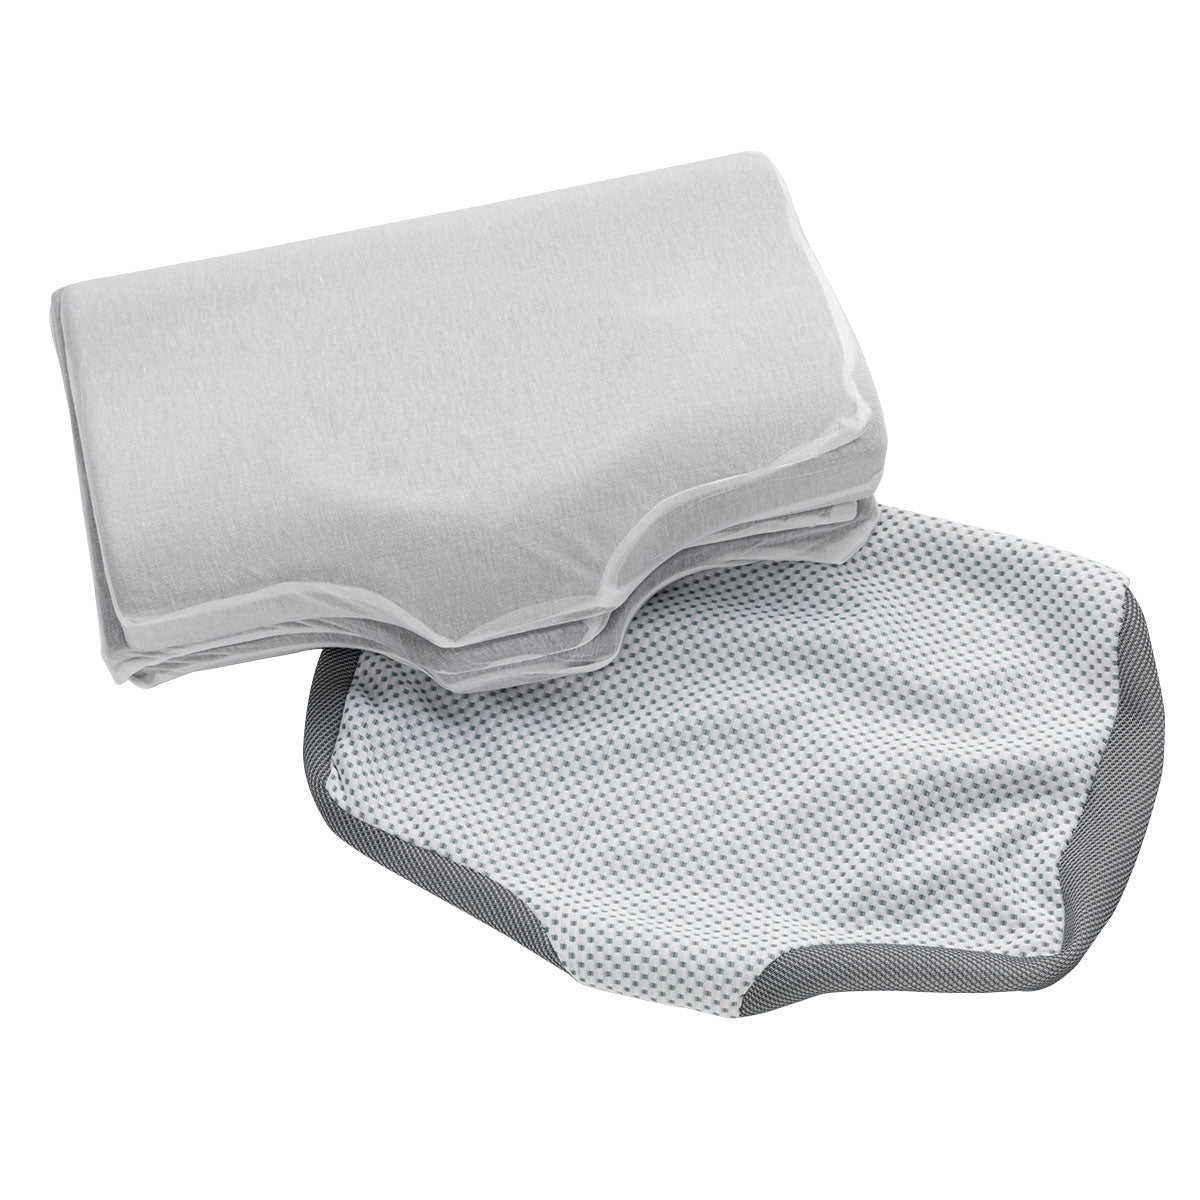 【家居】輕鬆側睡記憶海綿枕2 專用枕套